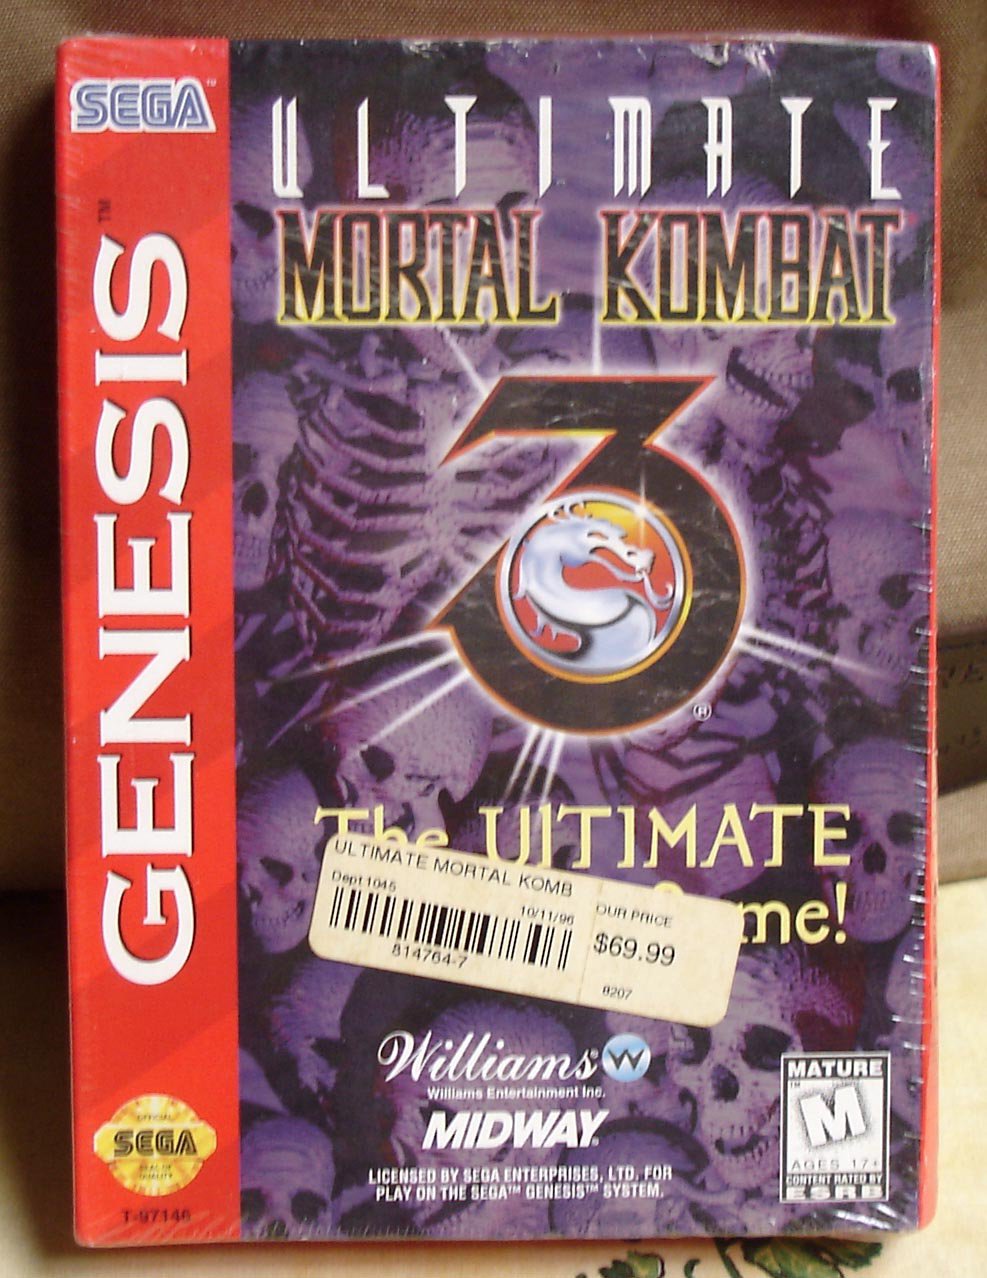 download mortal kombat ultimate trilogy sega genesis